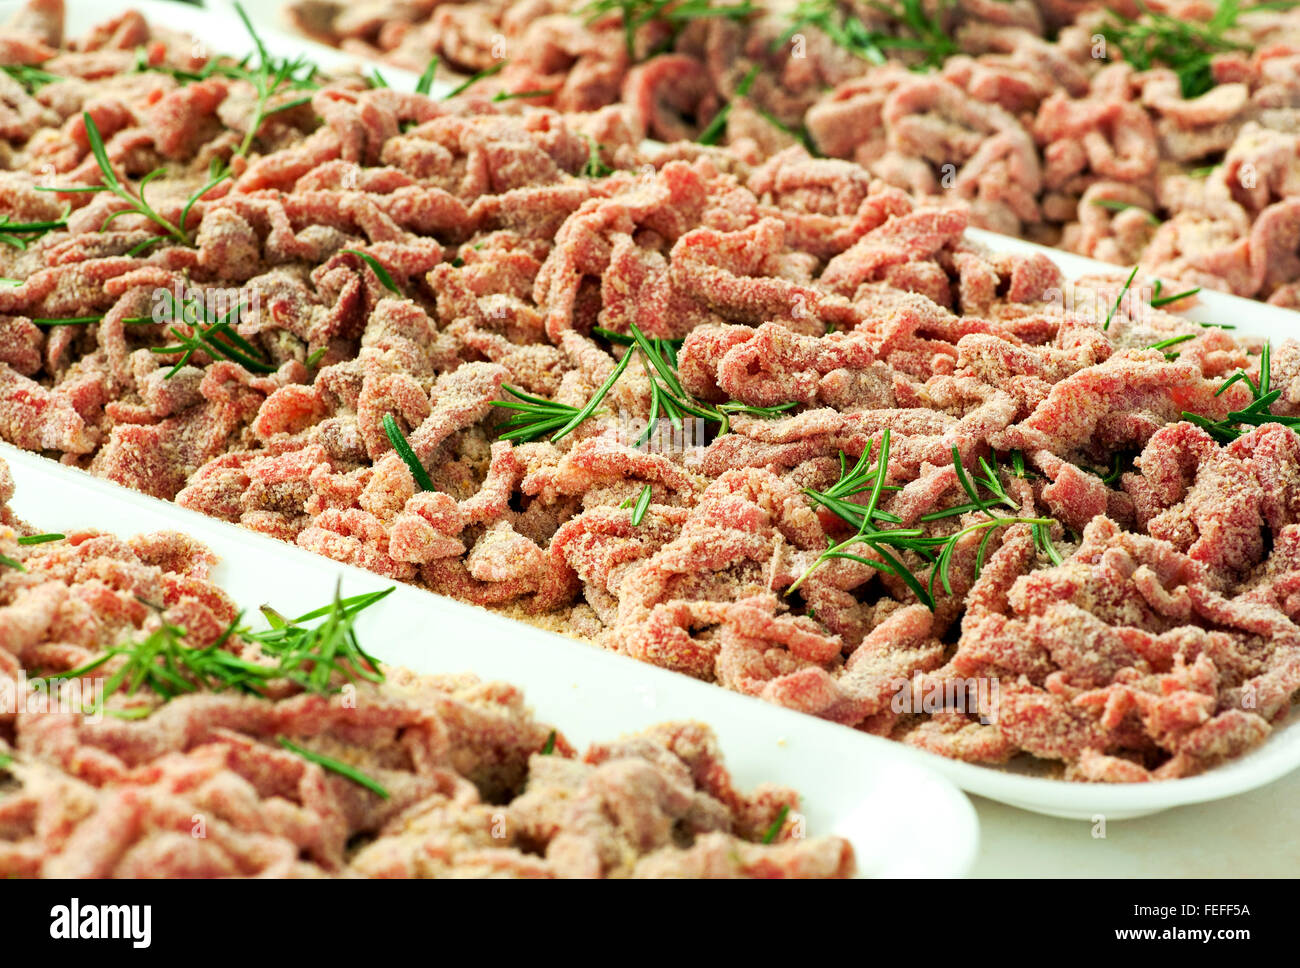 Vassoi di impanati o impanati strisce di carne di manzo crudo guarnito con rosmarino fresco sul display in una macelleria per la vendita Foto Stock